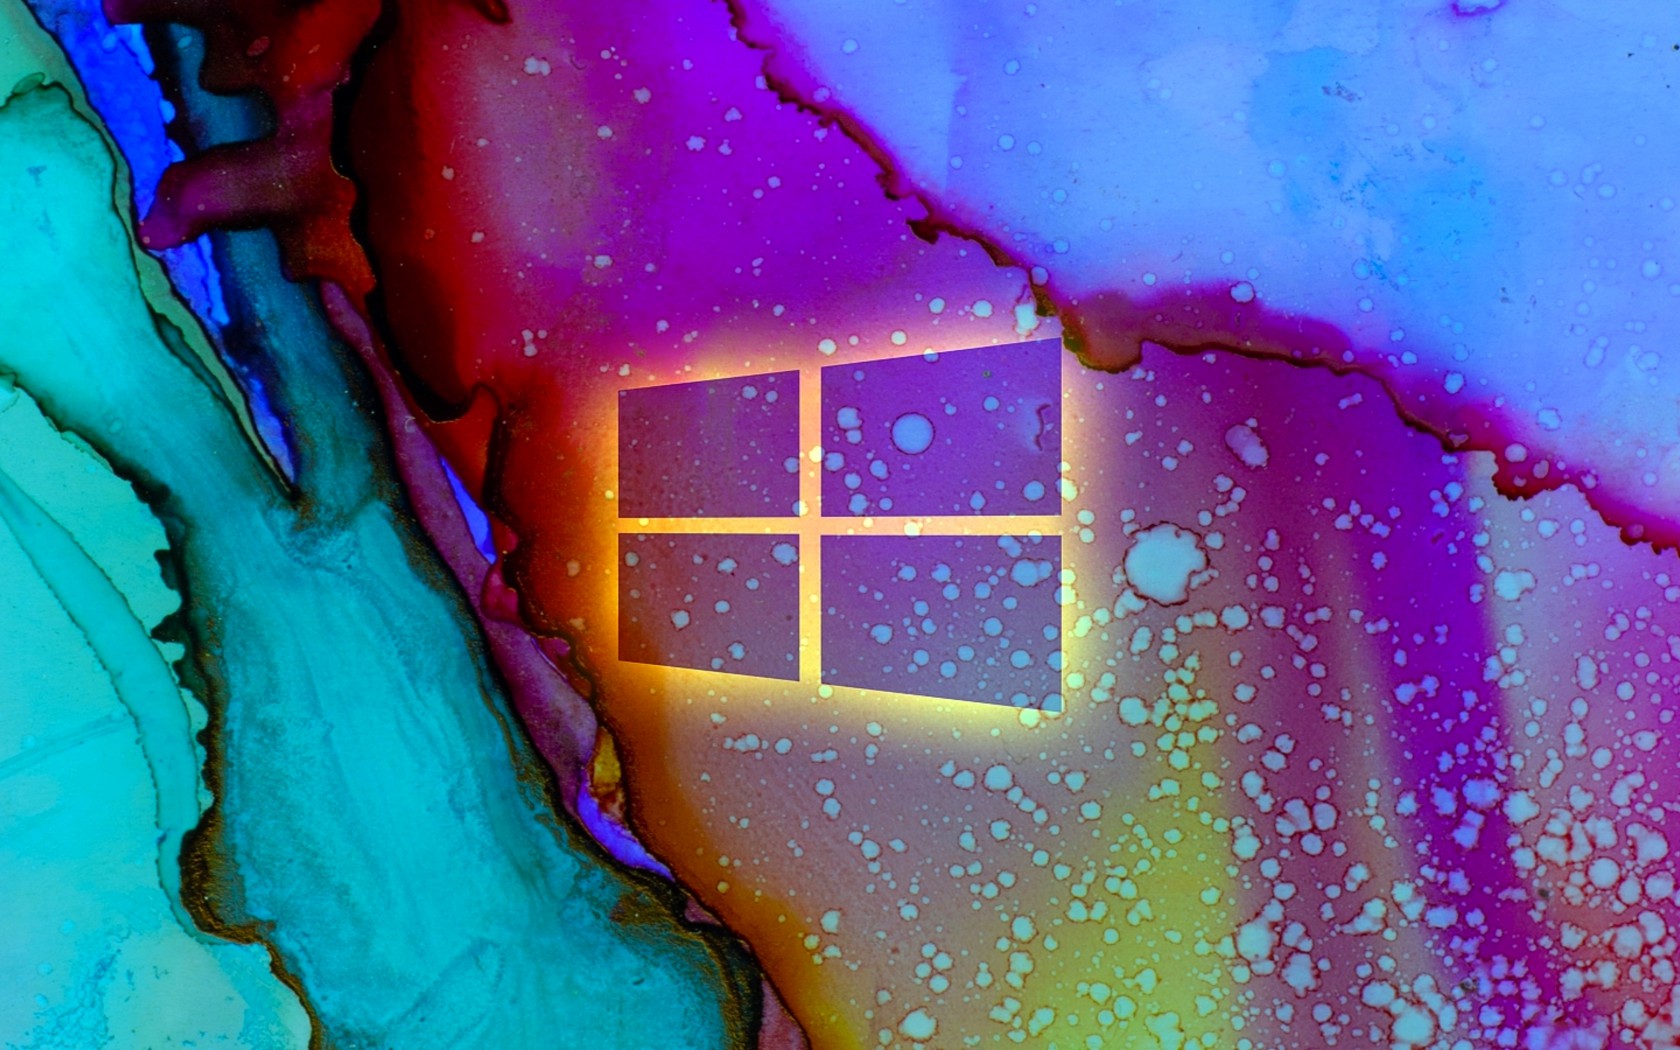 Windows 10 (9)